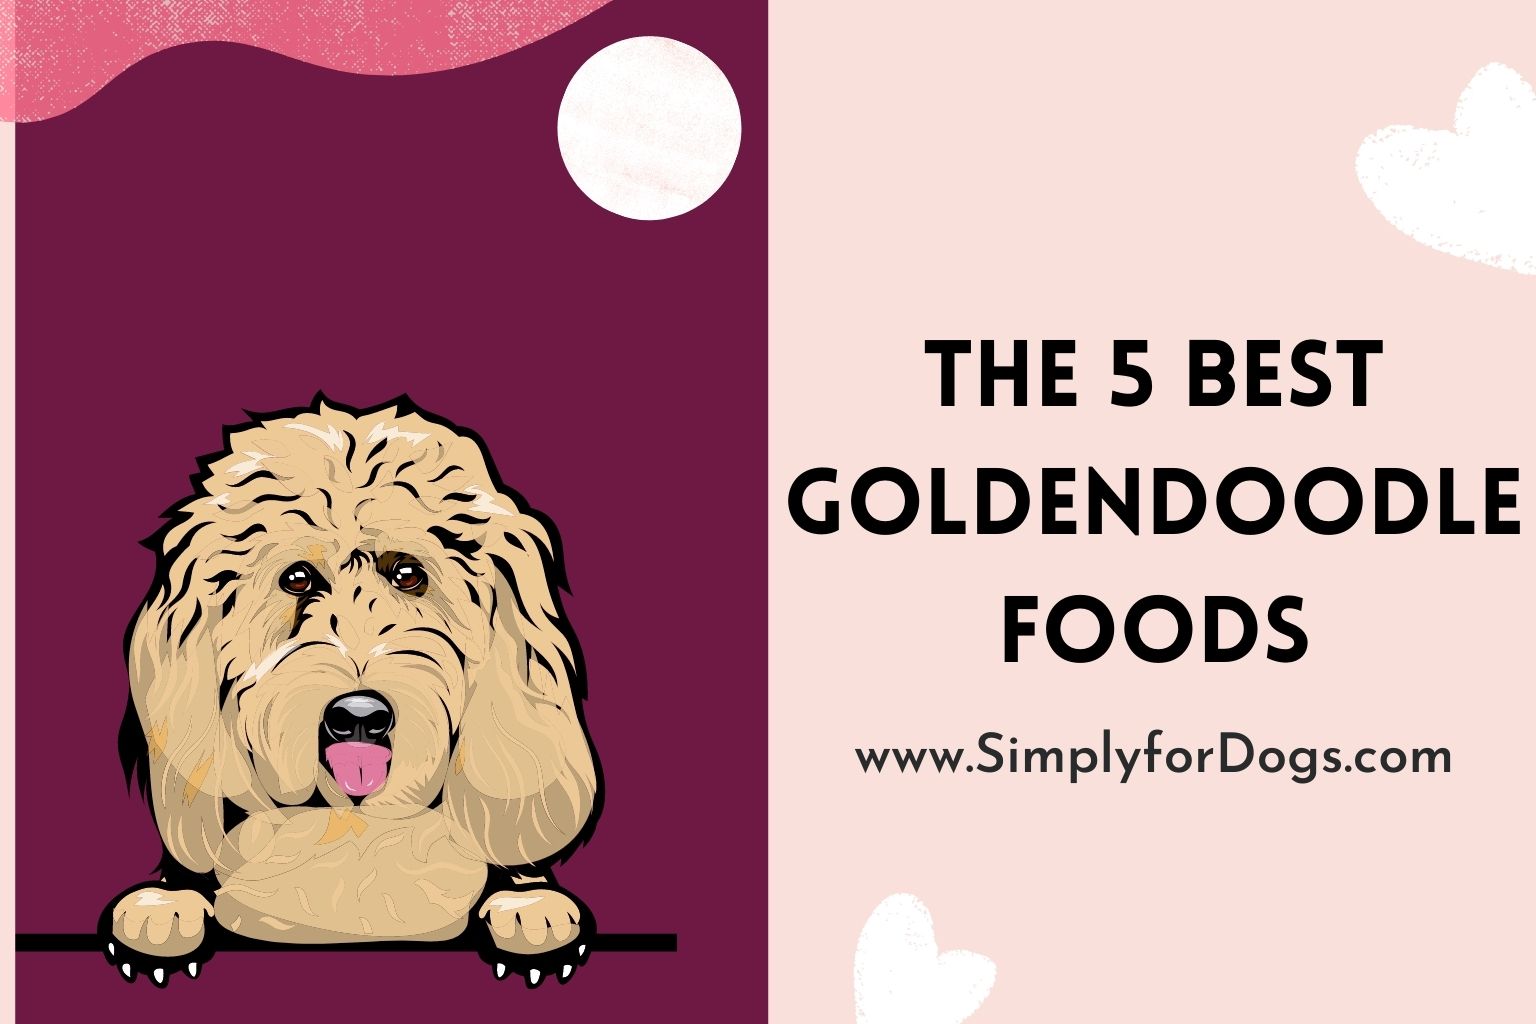 Goldendoodle Foods